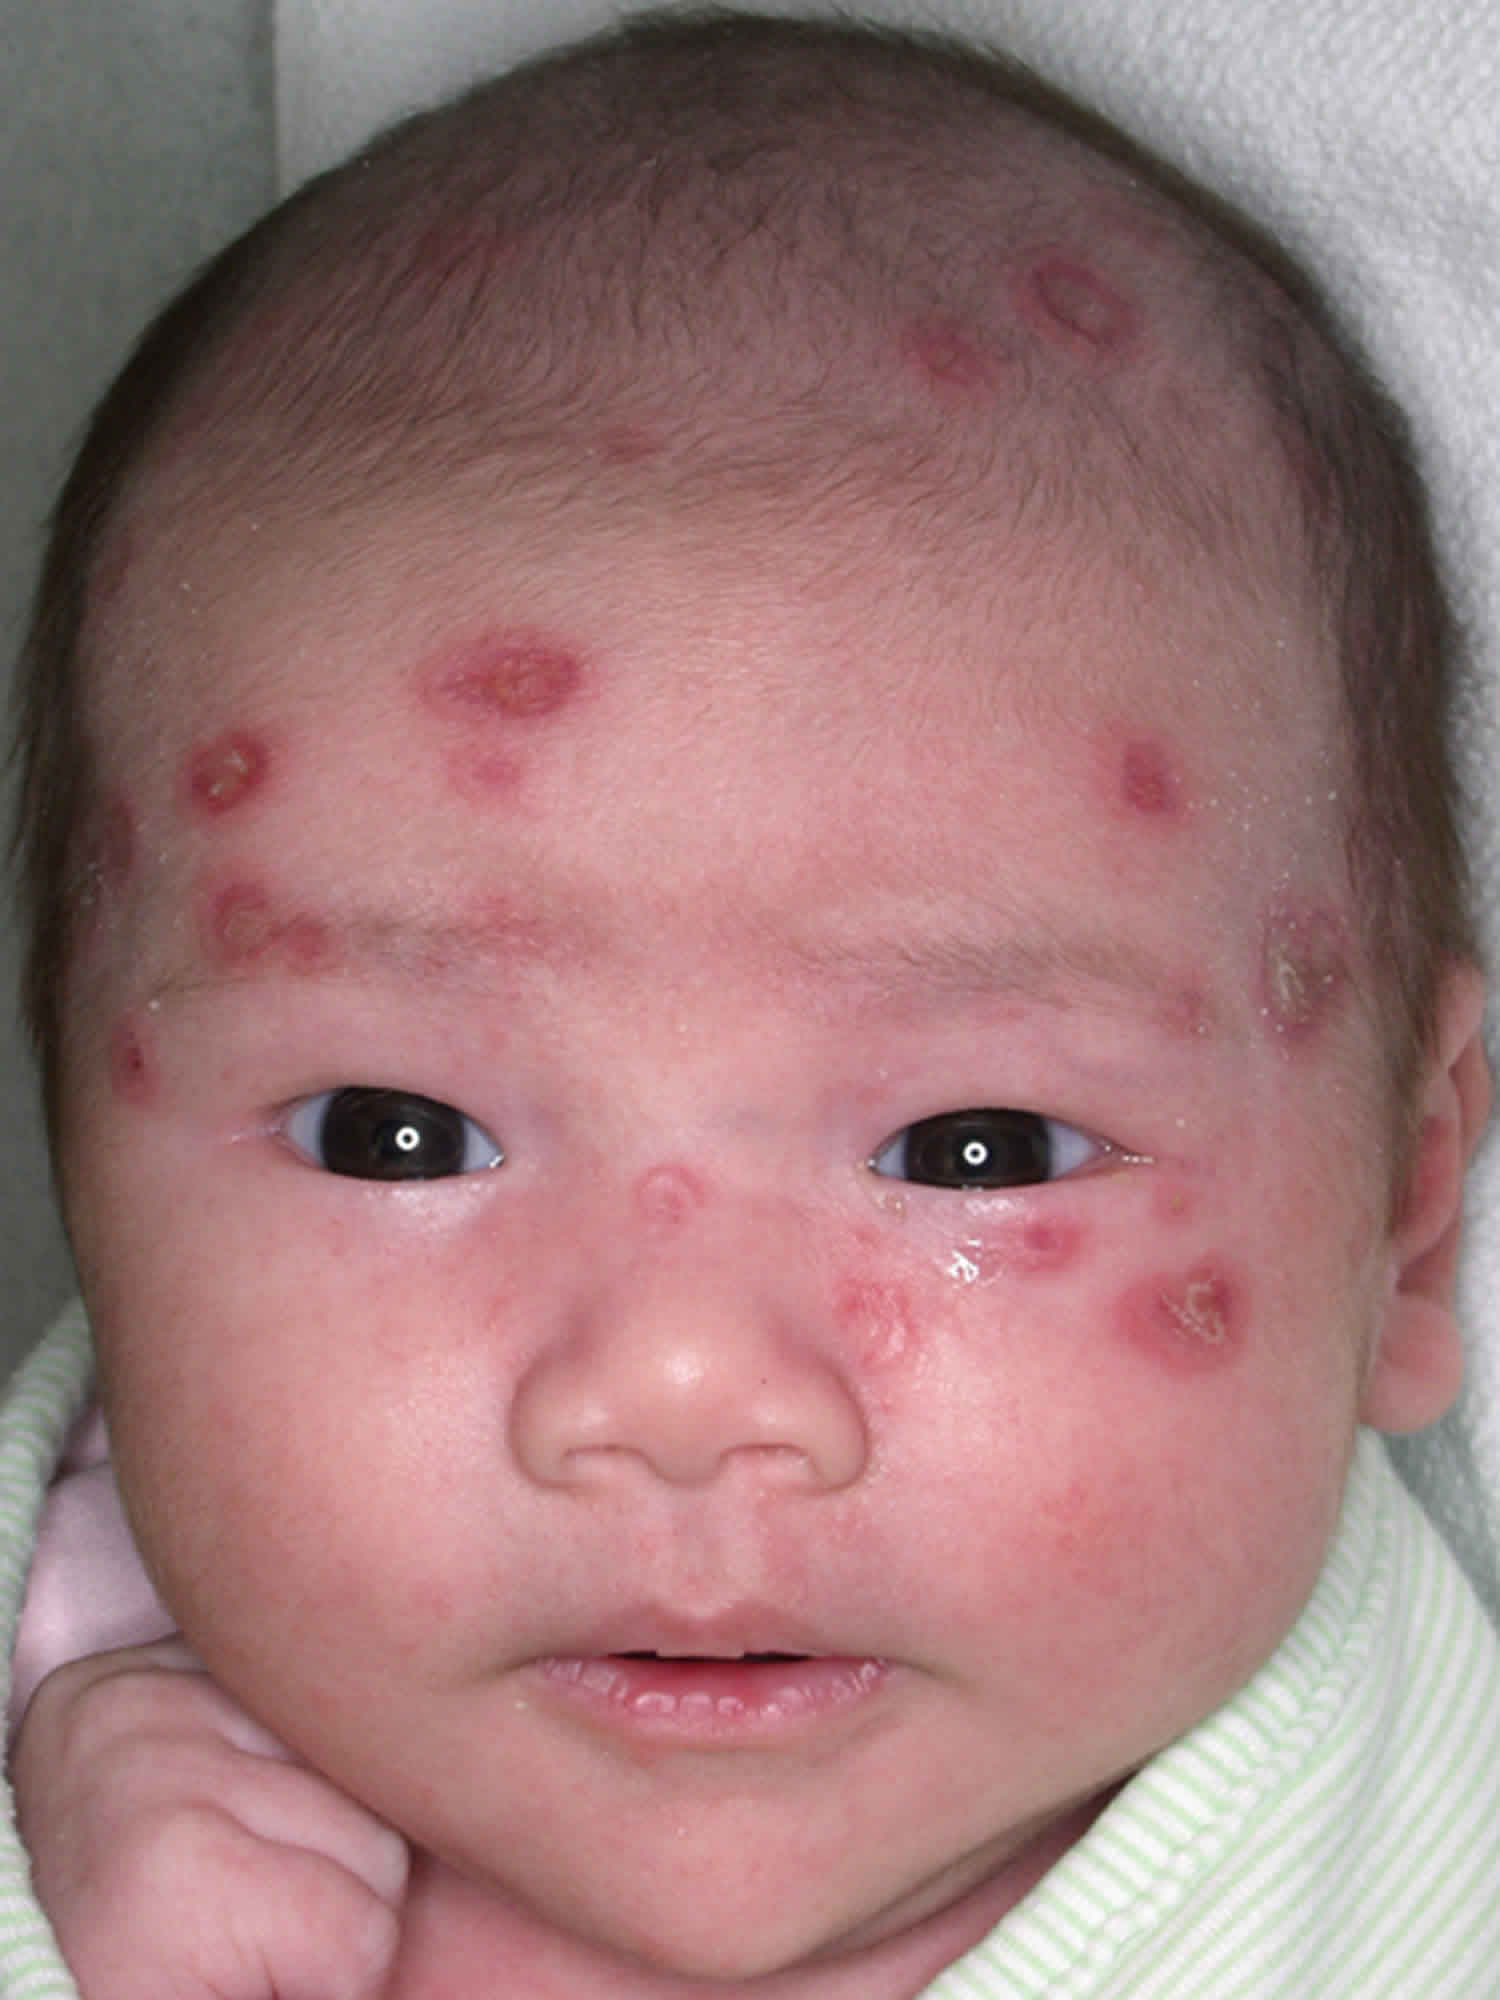 Pediatric lupus